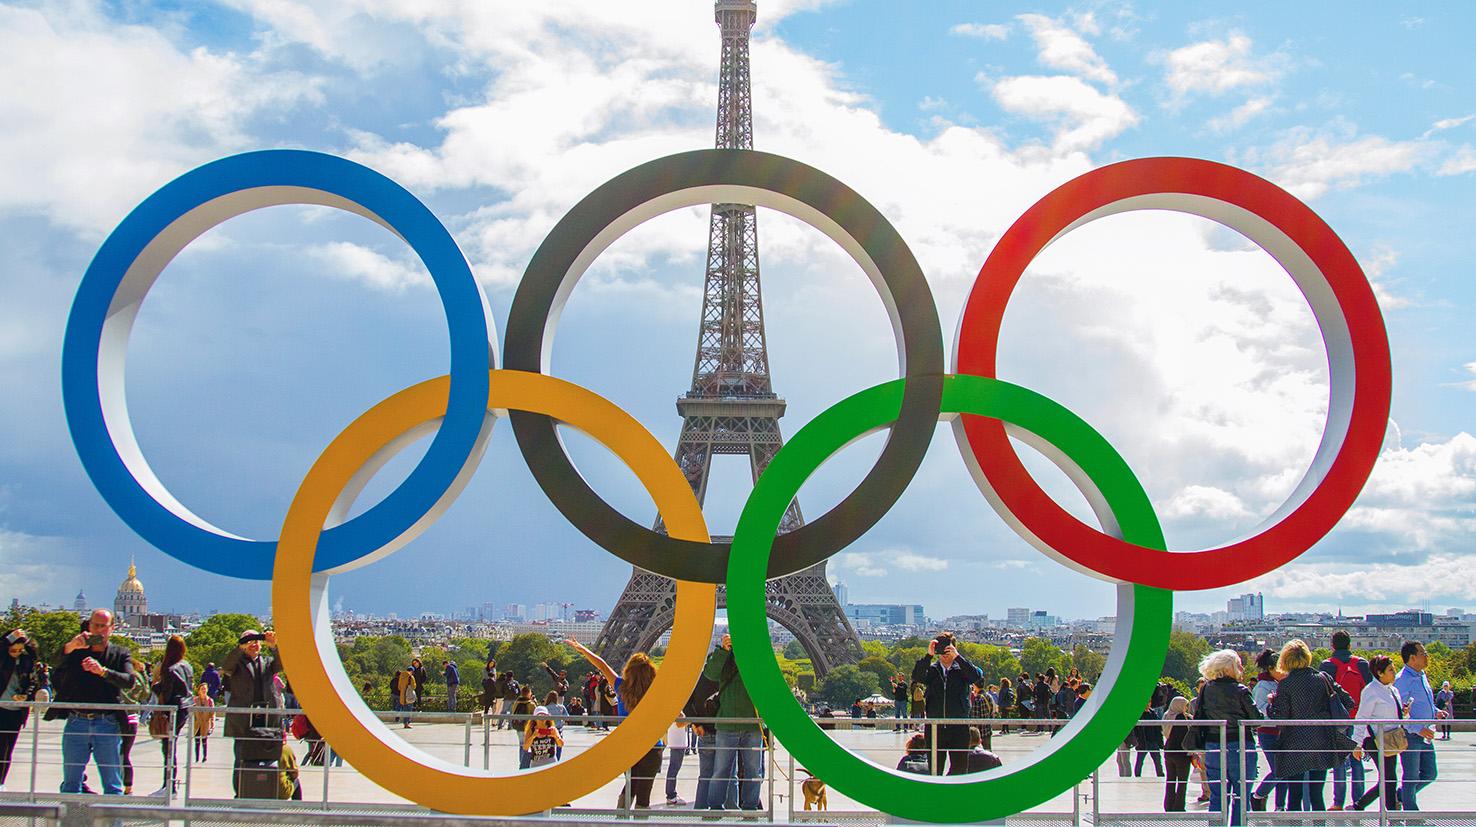 Până în 2036 vor mai avea loc trei ediții ale Jocurilor Olimpice de vară, organizate la Paris (2024), Los Angeles (2028) și Brisbane (2032)